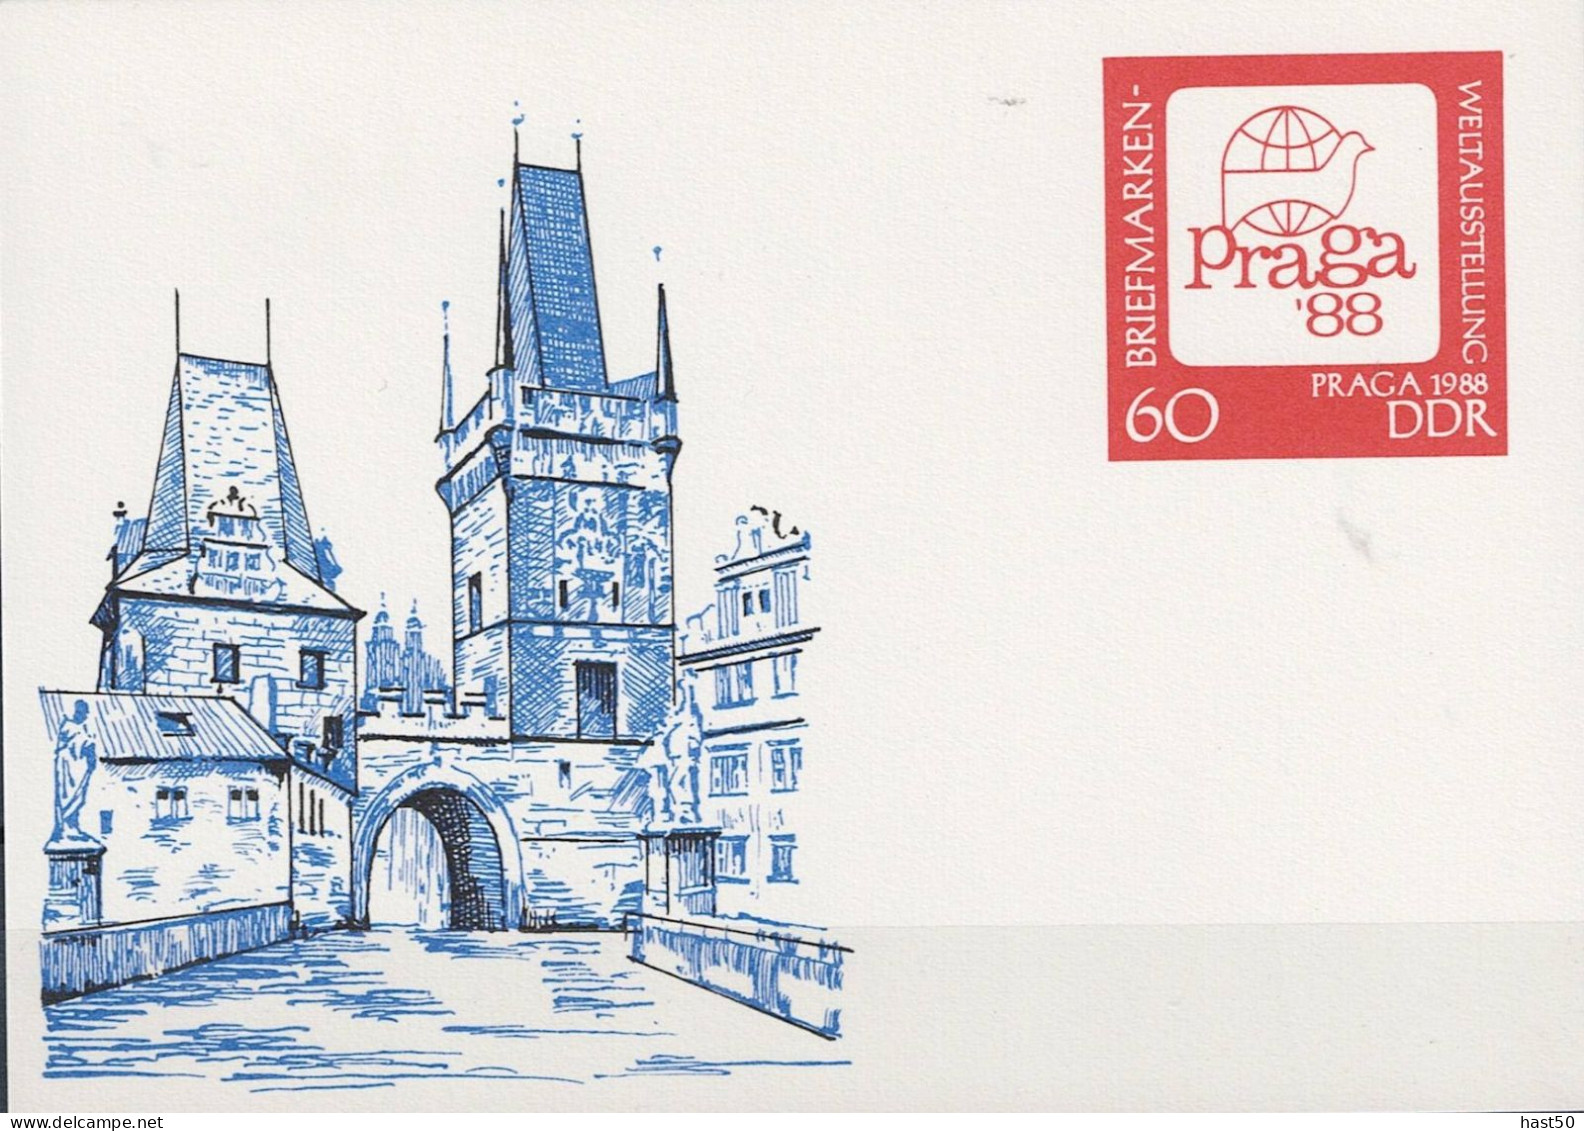 DDR GDR RDA - Sonderpostkarte PRAGA 1988 (MiNr: P 99) 1988 - Ungelaufen - Postkaarten - Ongebruikt